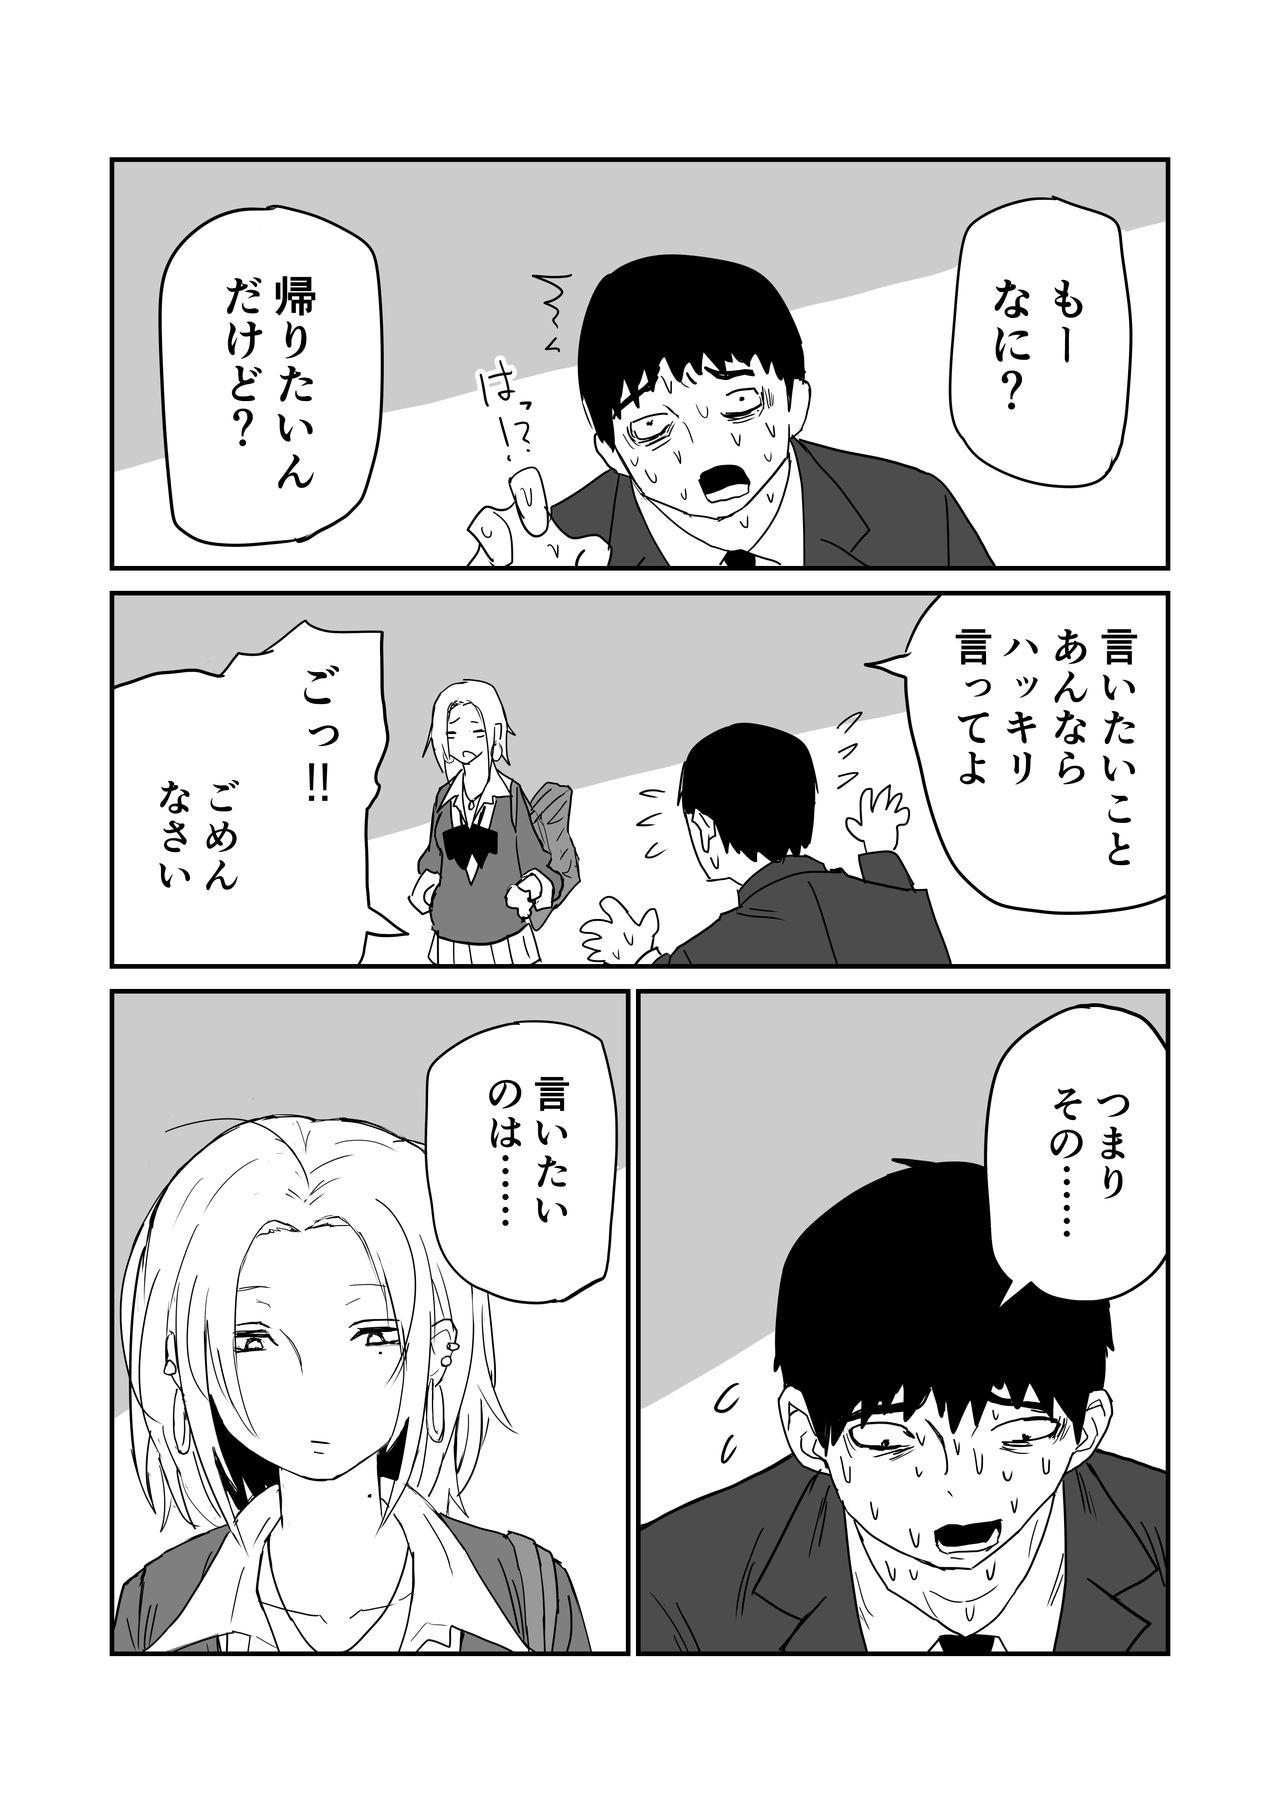 女子高生のエロ漫画 35